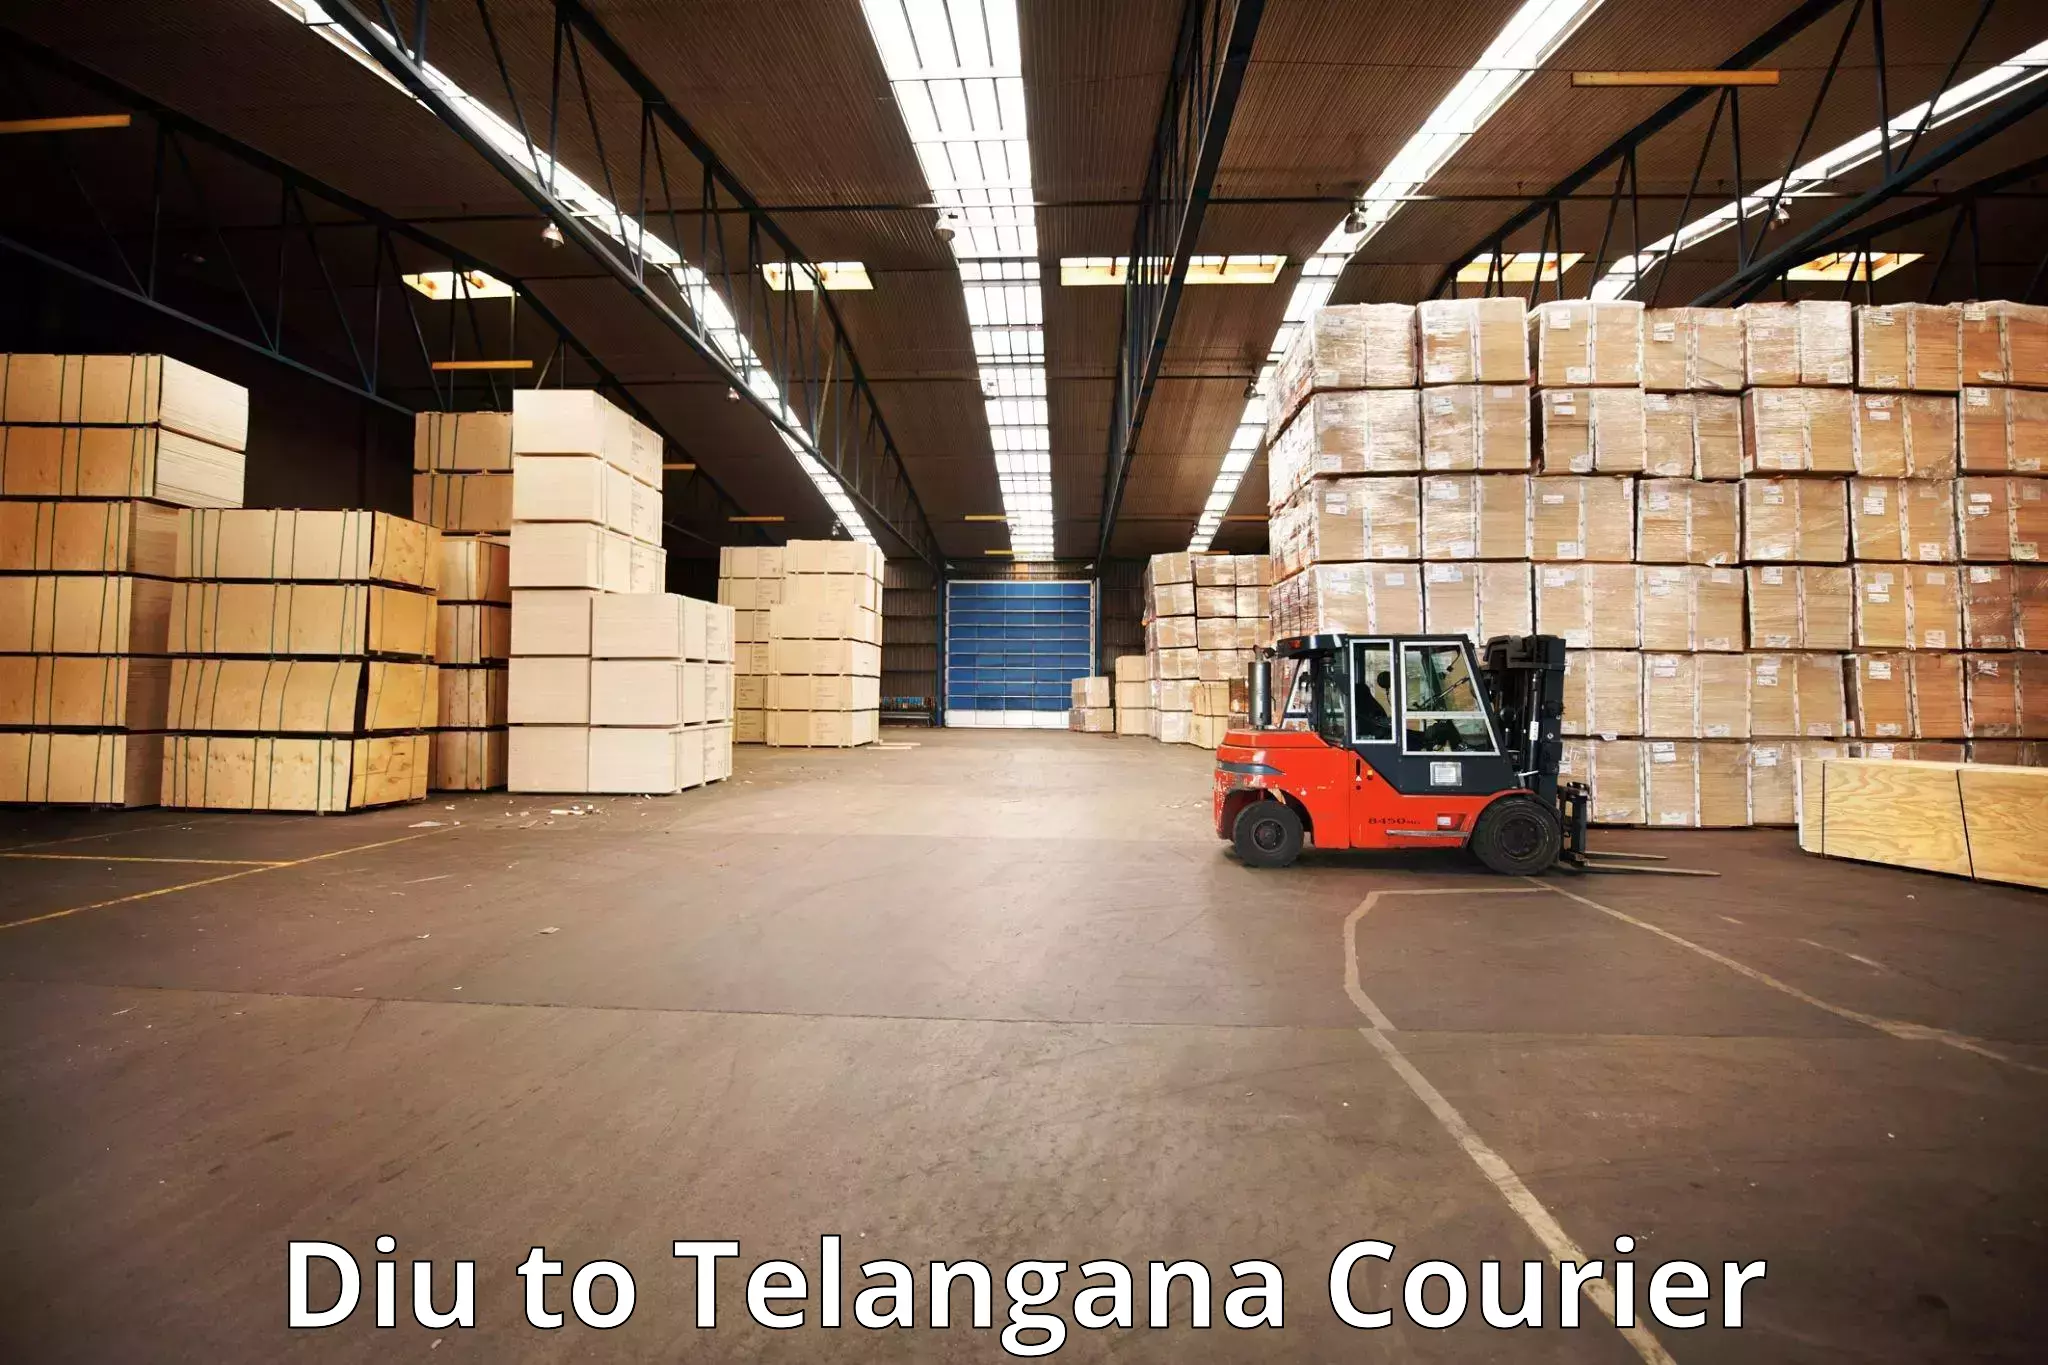 Comprehensive baggage service Diu to Telangana